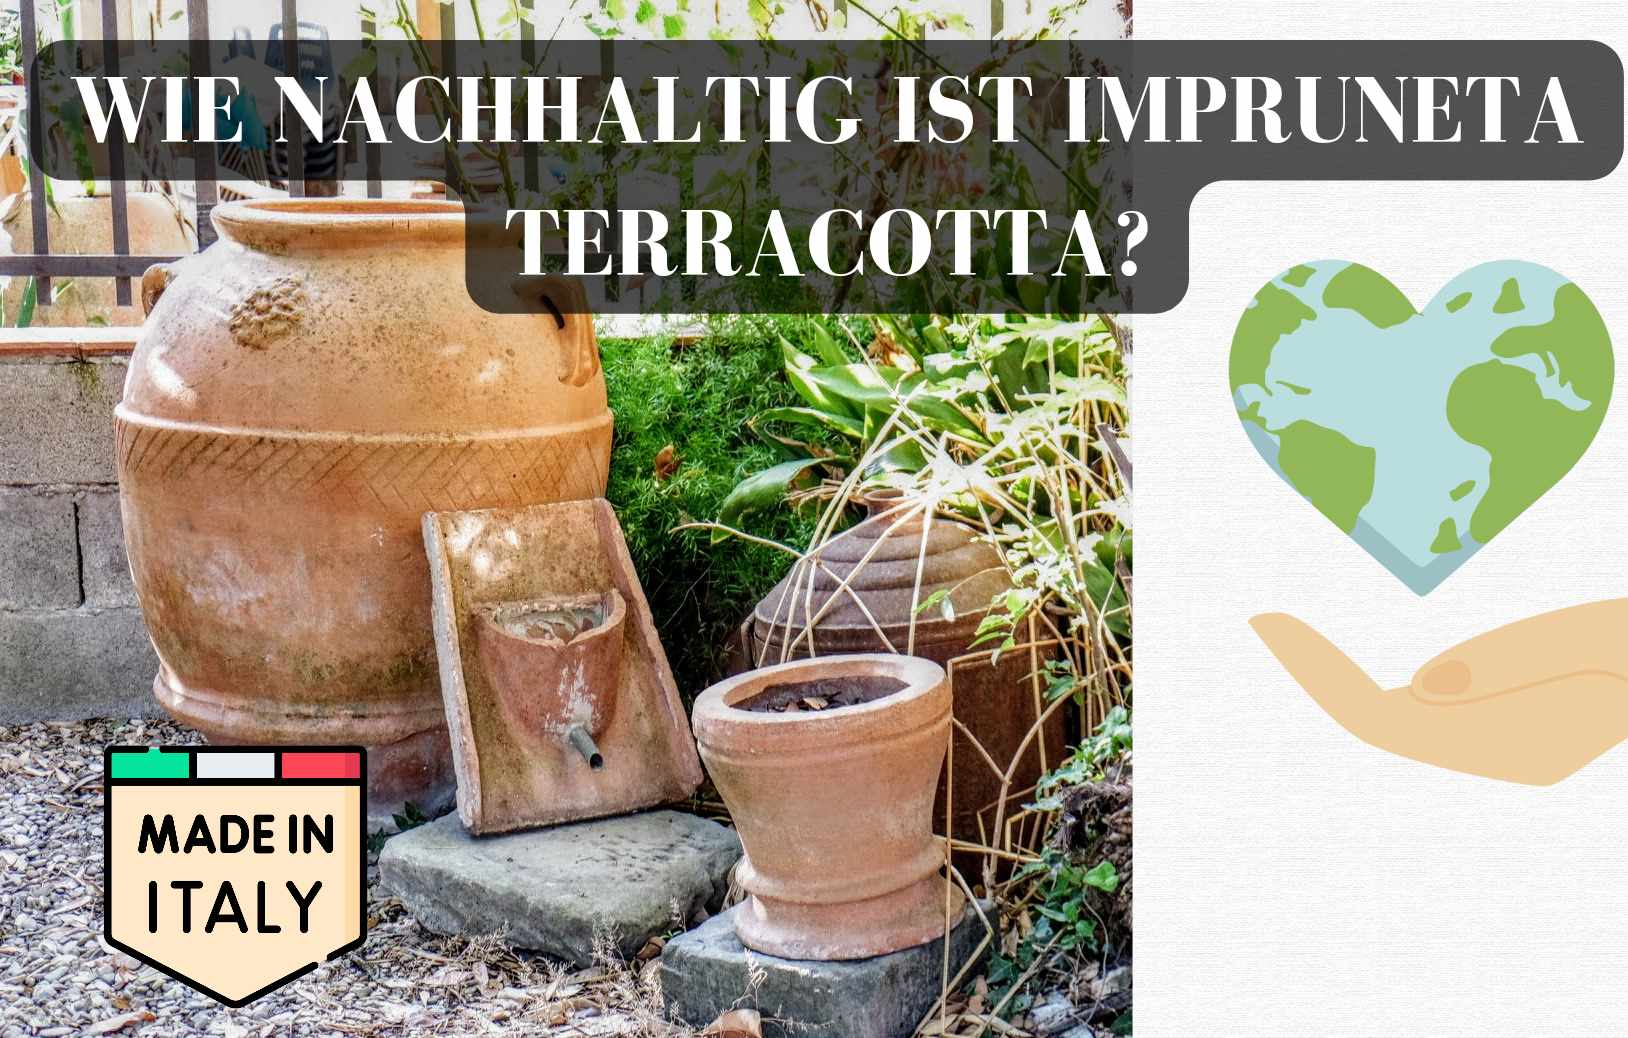 Anzeige: Wie nachhaltig ist Impruneta Terracotta?